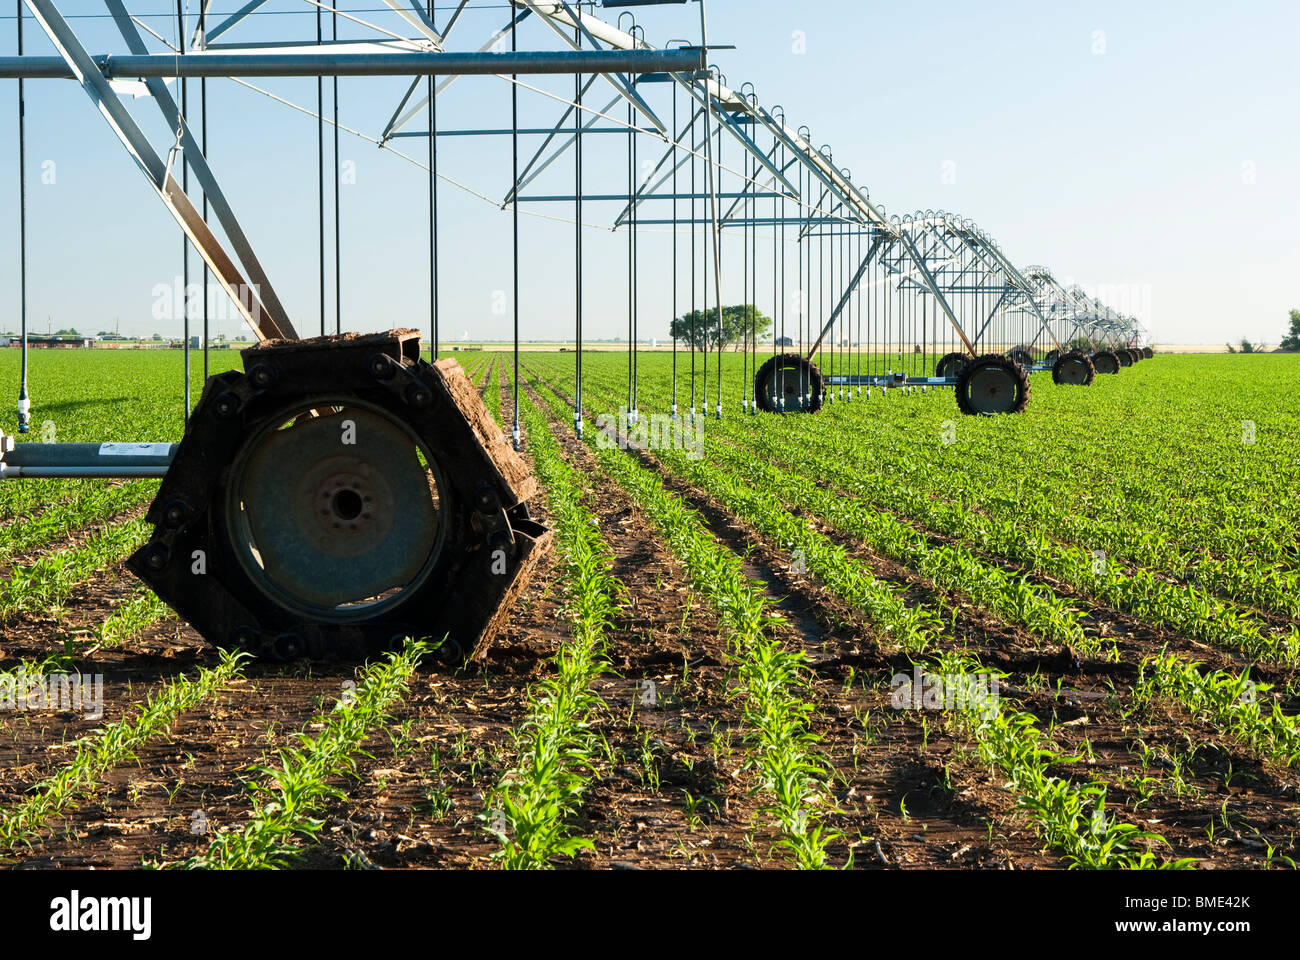 Un système d'irrigation à pivot central dans un champ de maïs Photo Stock -  Alamy